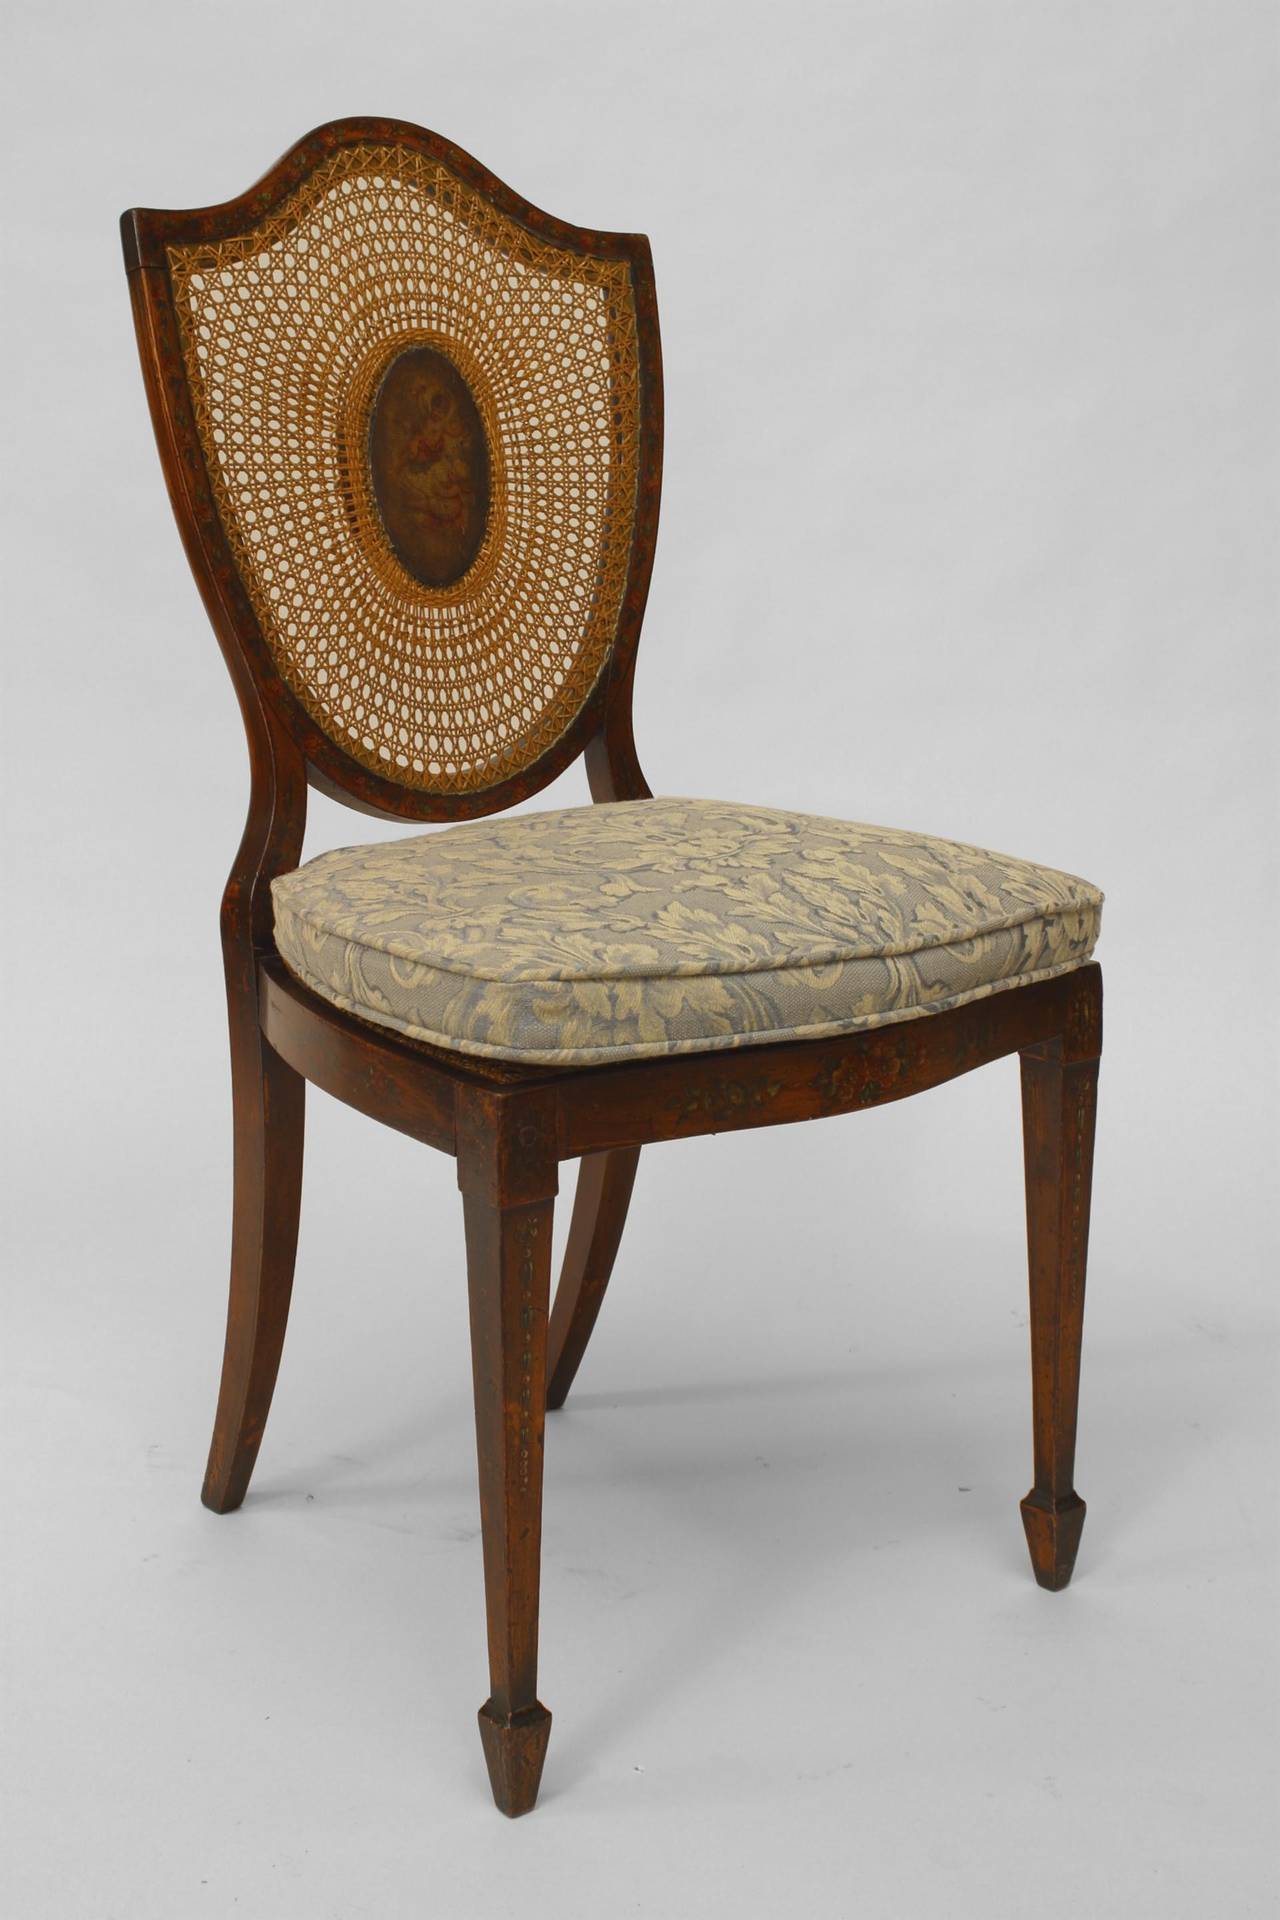 Ein Paar englische Beistellstühle im Sheraton-Stil (19. Jh.) aus satiniertem Holz mit bemalter Rückenlehne und Schilfrohr.
